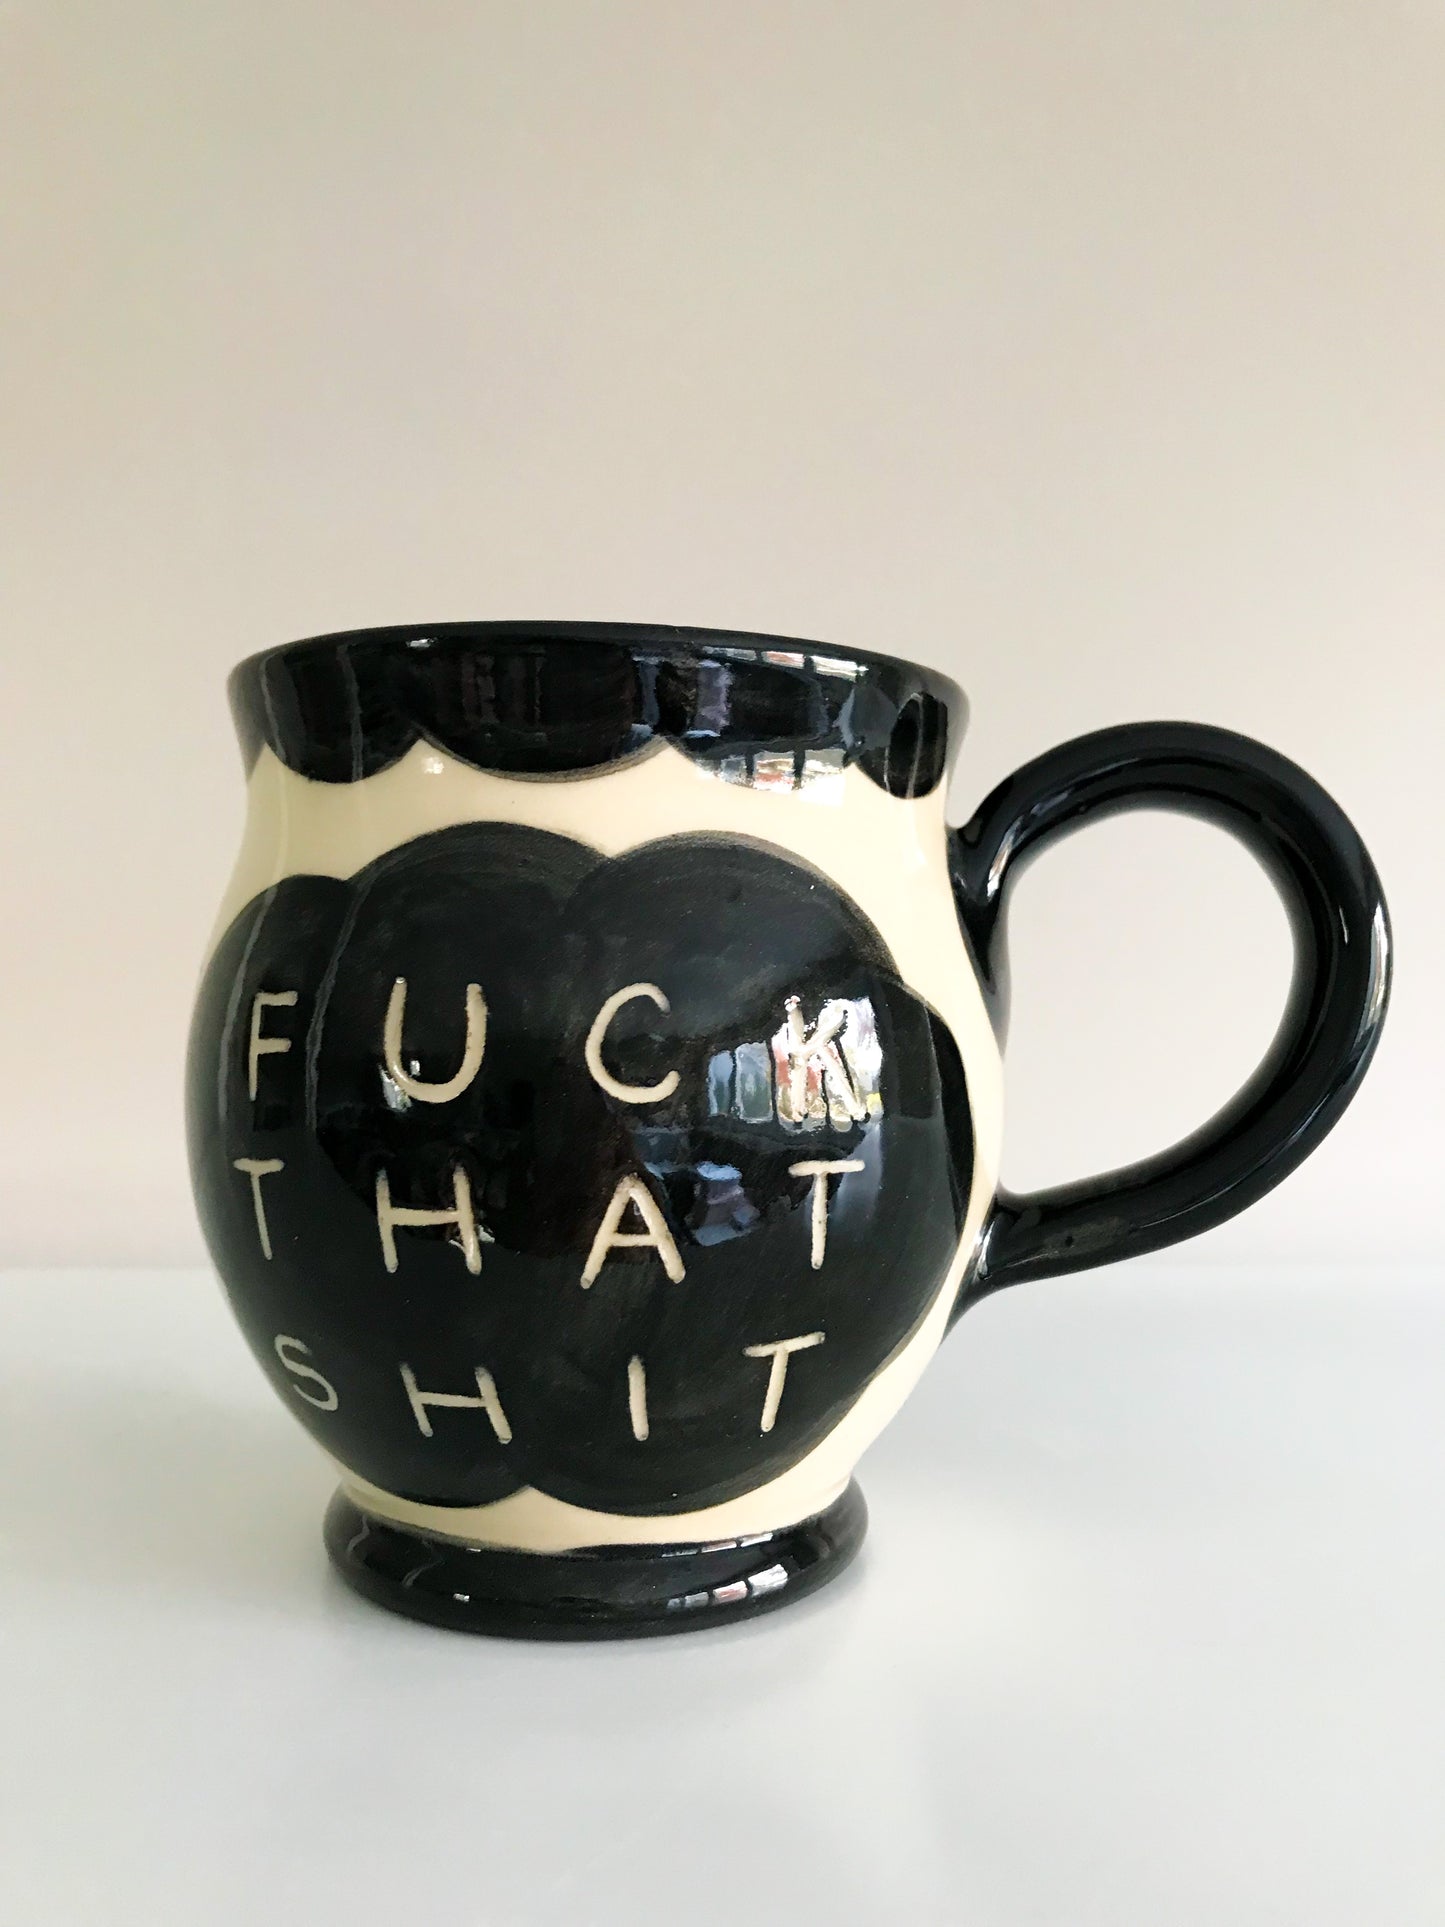 Profane Mug- Fuck This Shit, Fuck That Shit Mug- Noir